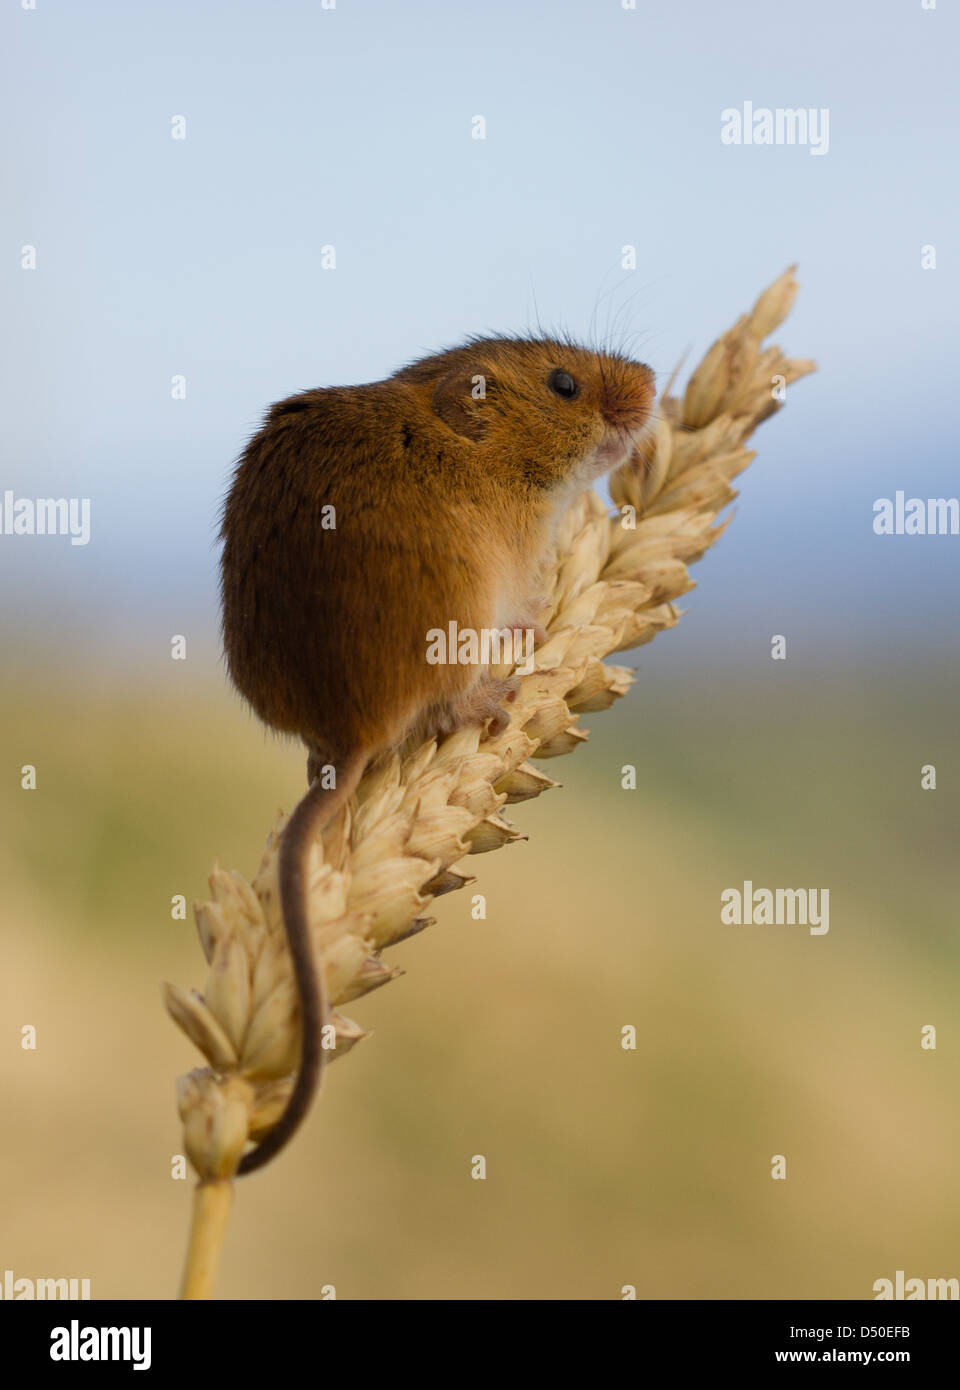 Micromys minutus (souris) sur l'épi de blé Banque D'Images